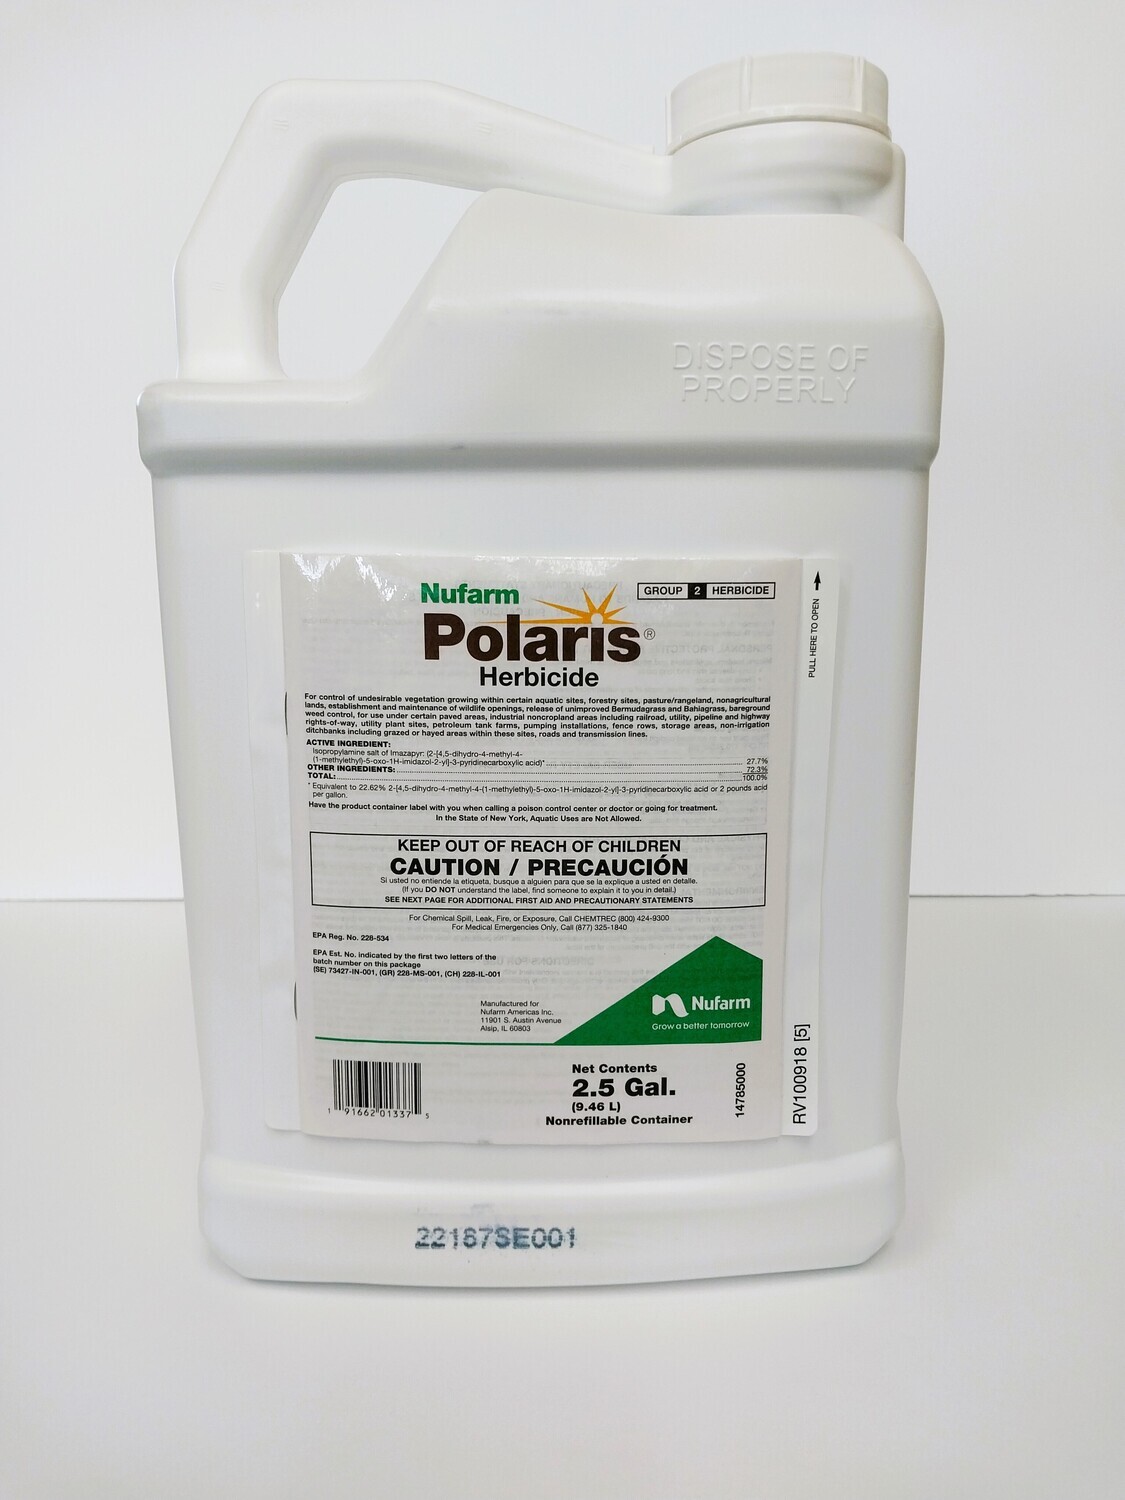 Polaris: 2.5 gallon